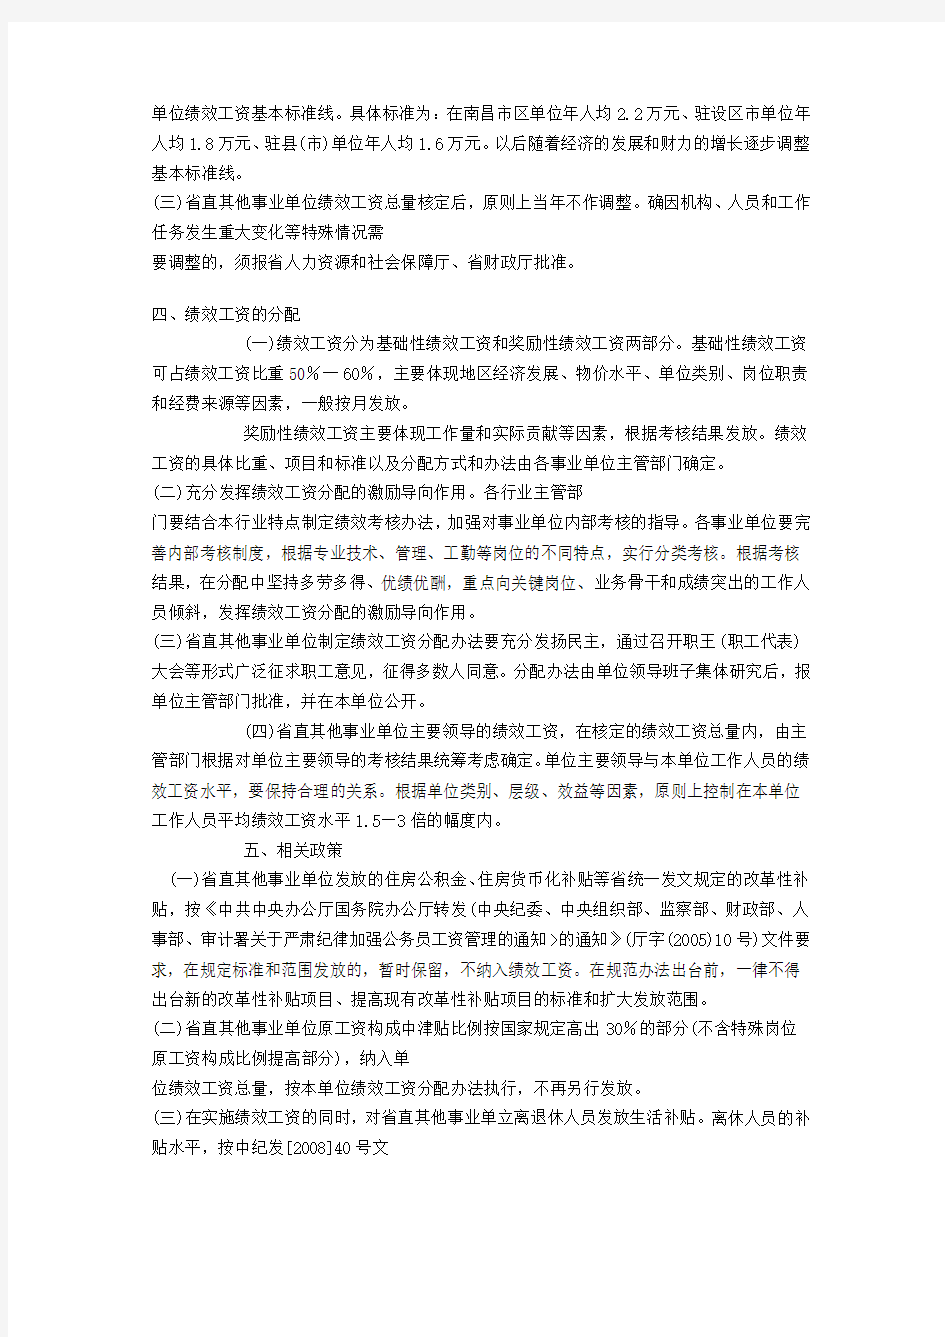 江西省省直其他事业单位绩效工资实施意见